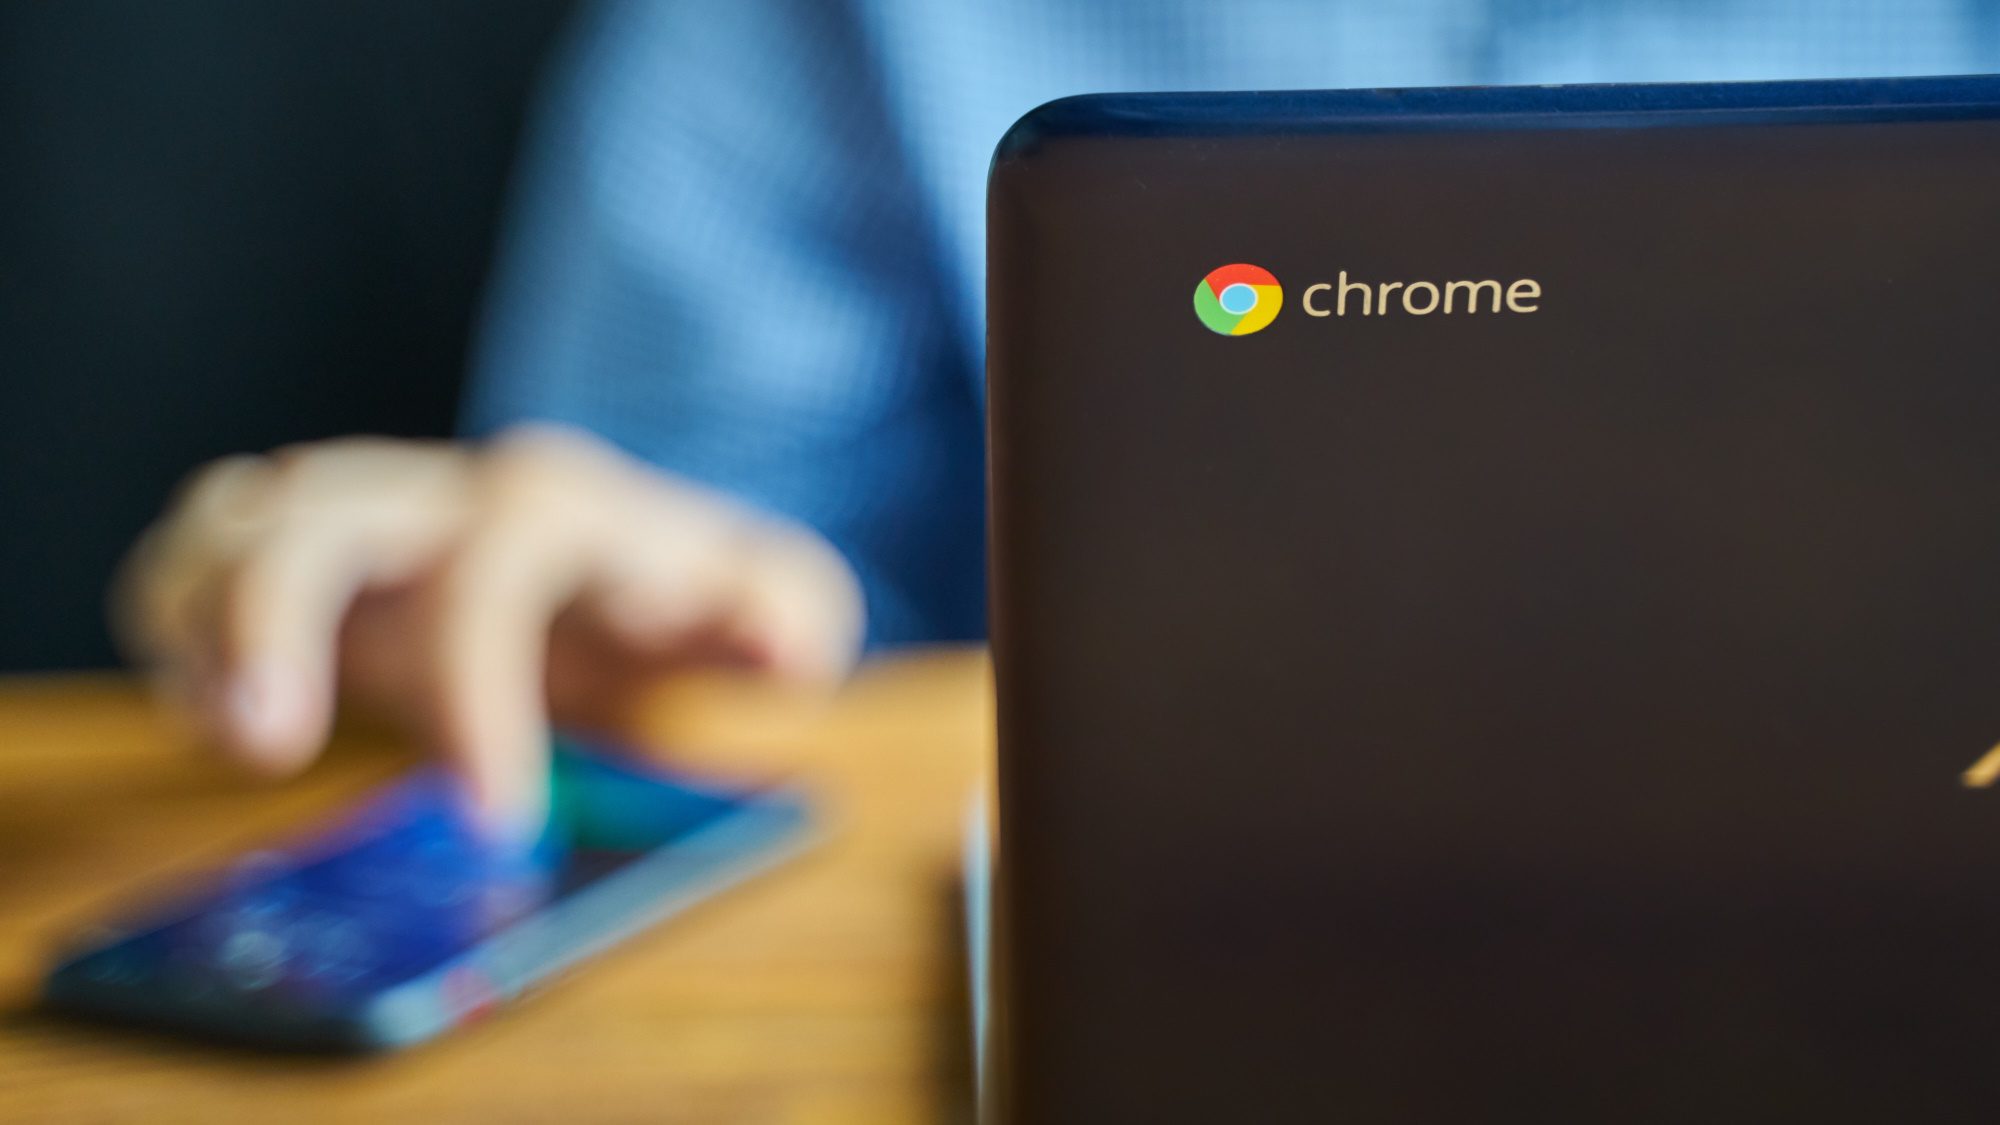 Chrome-logo op de achterkant van een Chromebook met een onscherpe man die eraan werkt